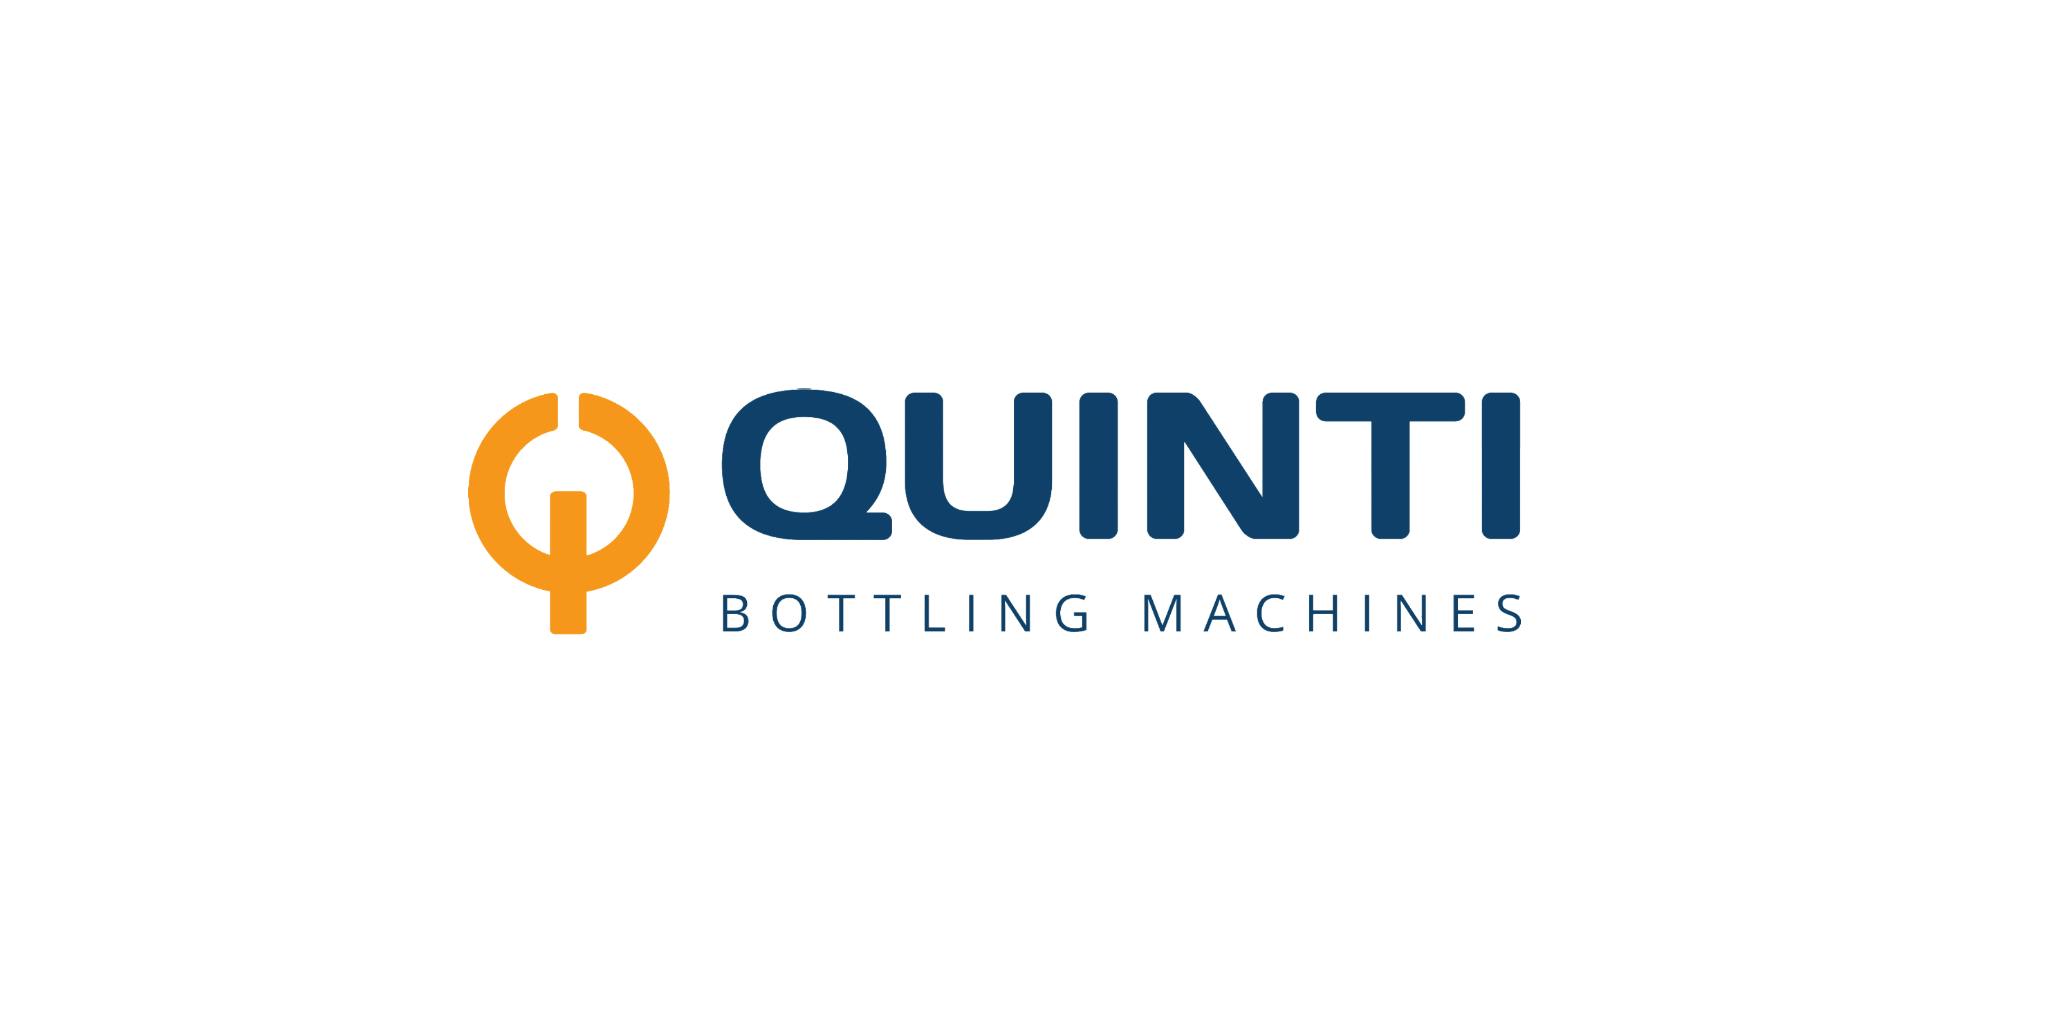 Il logo di Quinti Bottling Machines, con testo di colore blu, preceduto da una grande Q colore arancione